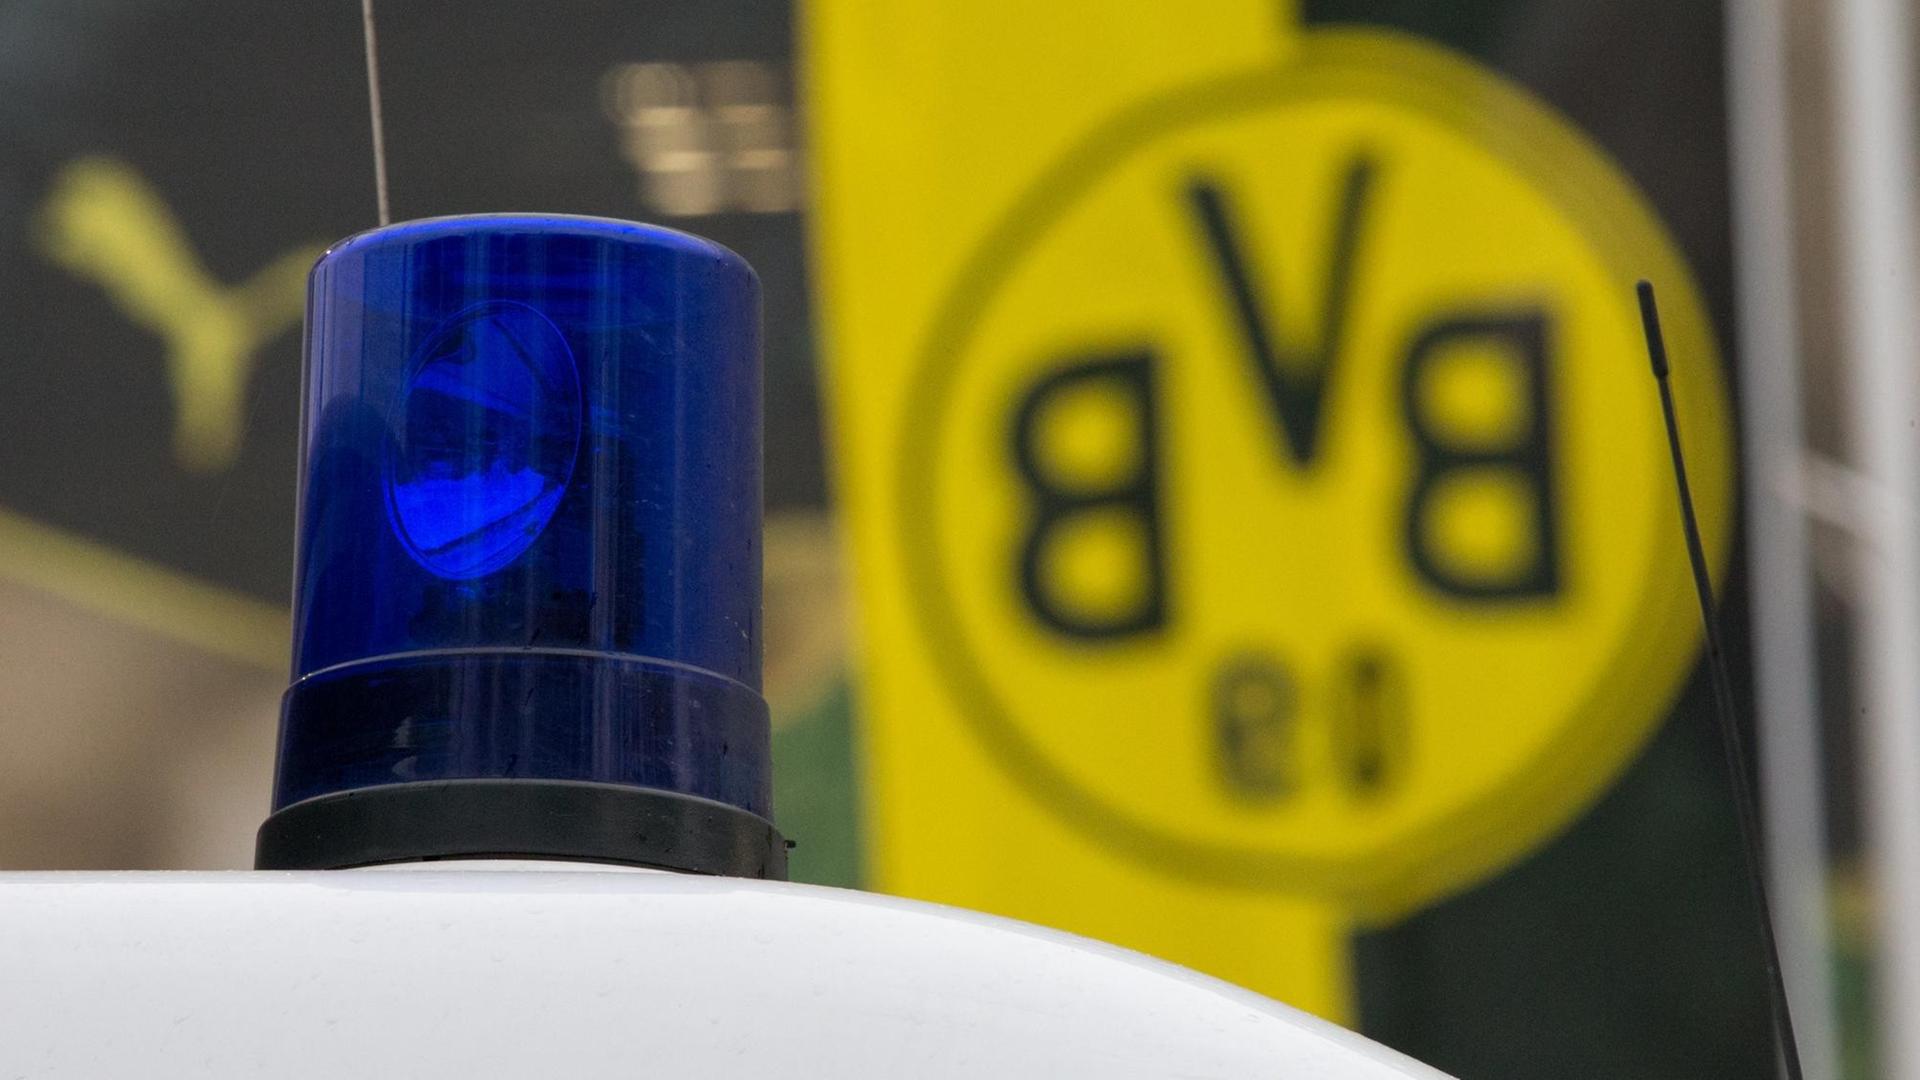 Das Blaulicht eines Polizeiwagens vor einer Fahne mit dem BVB-Logo.